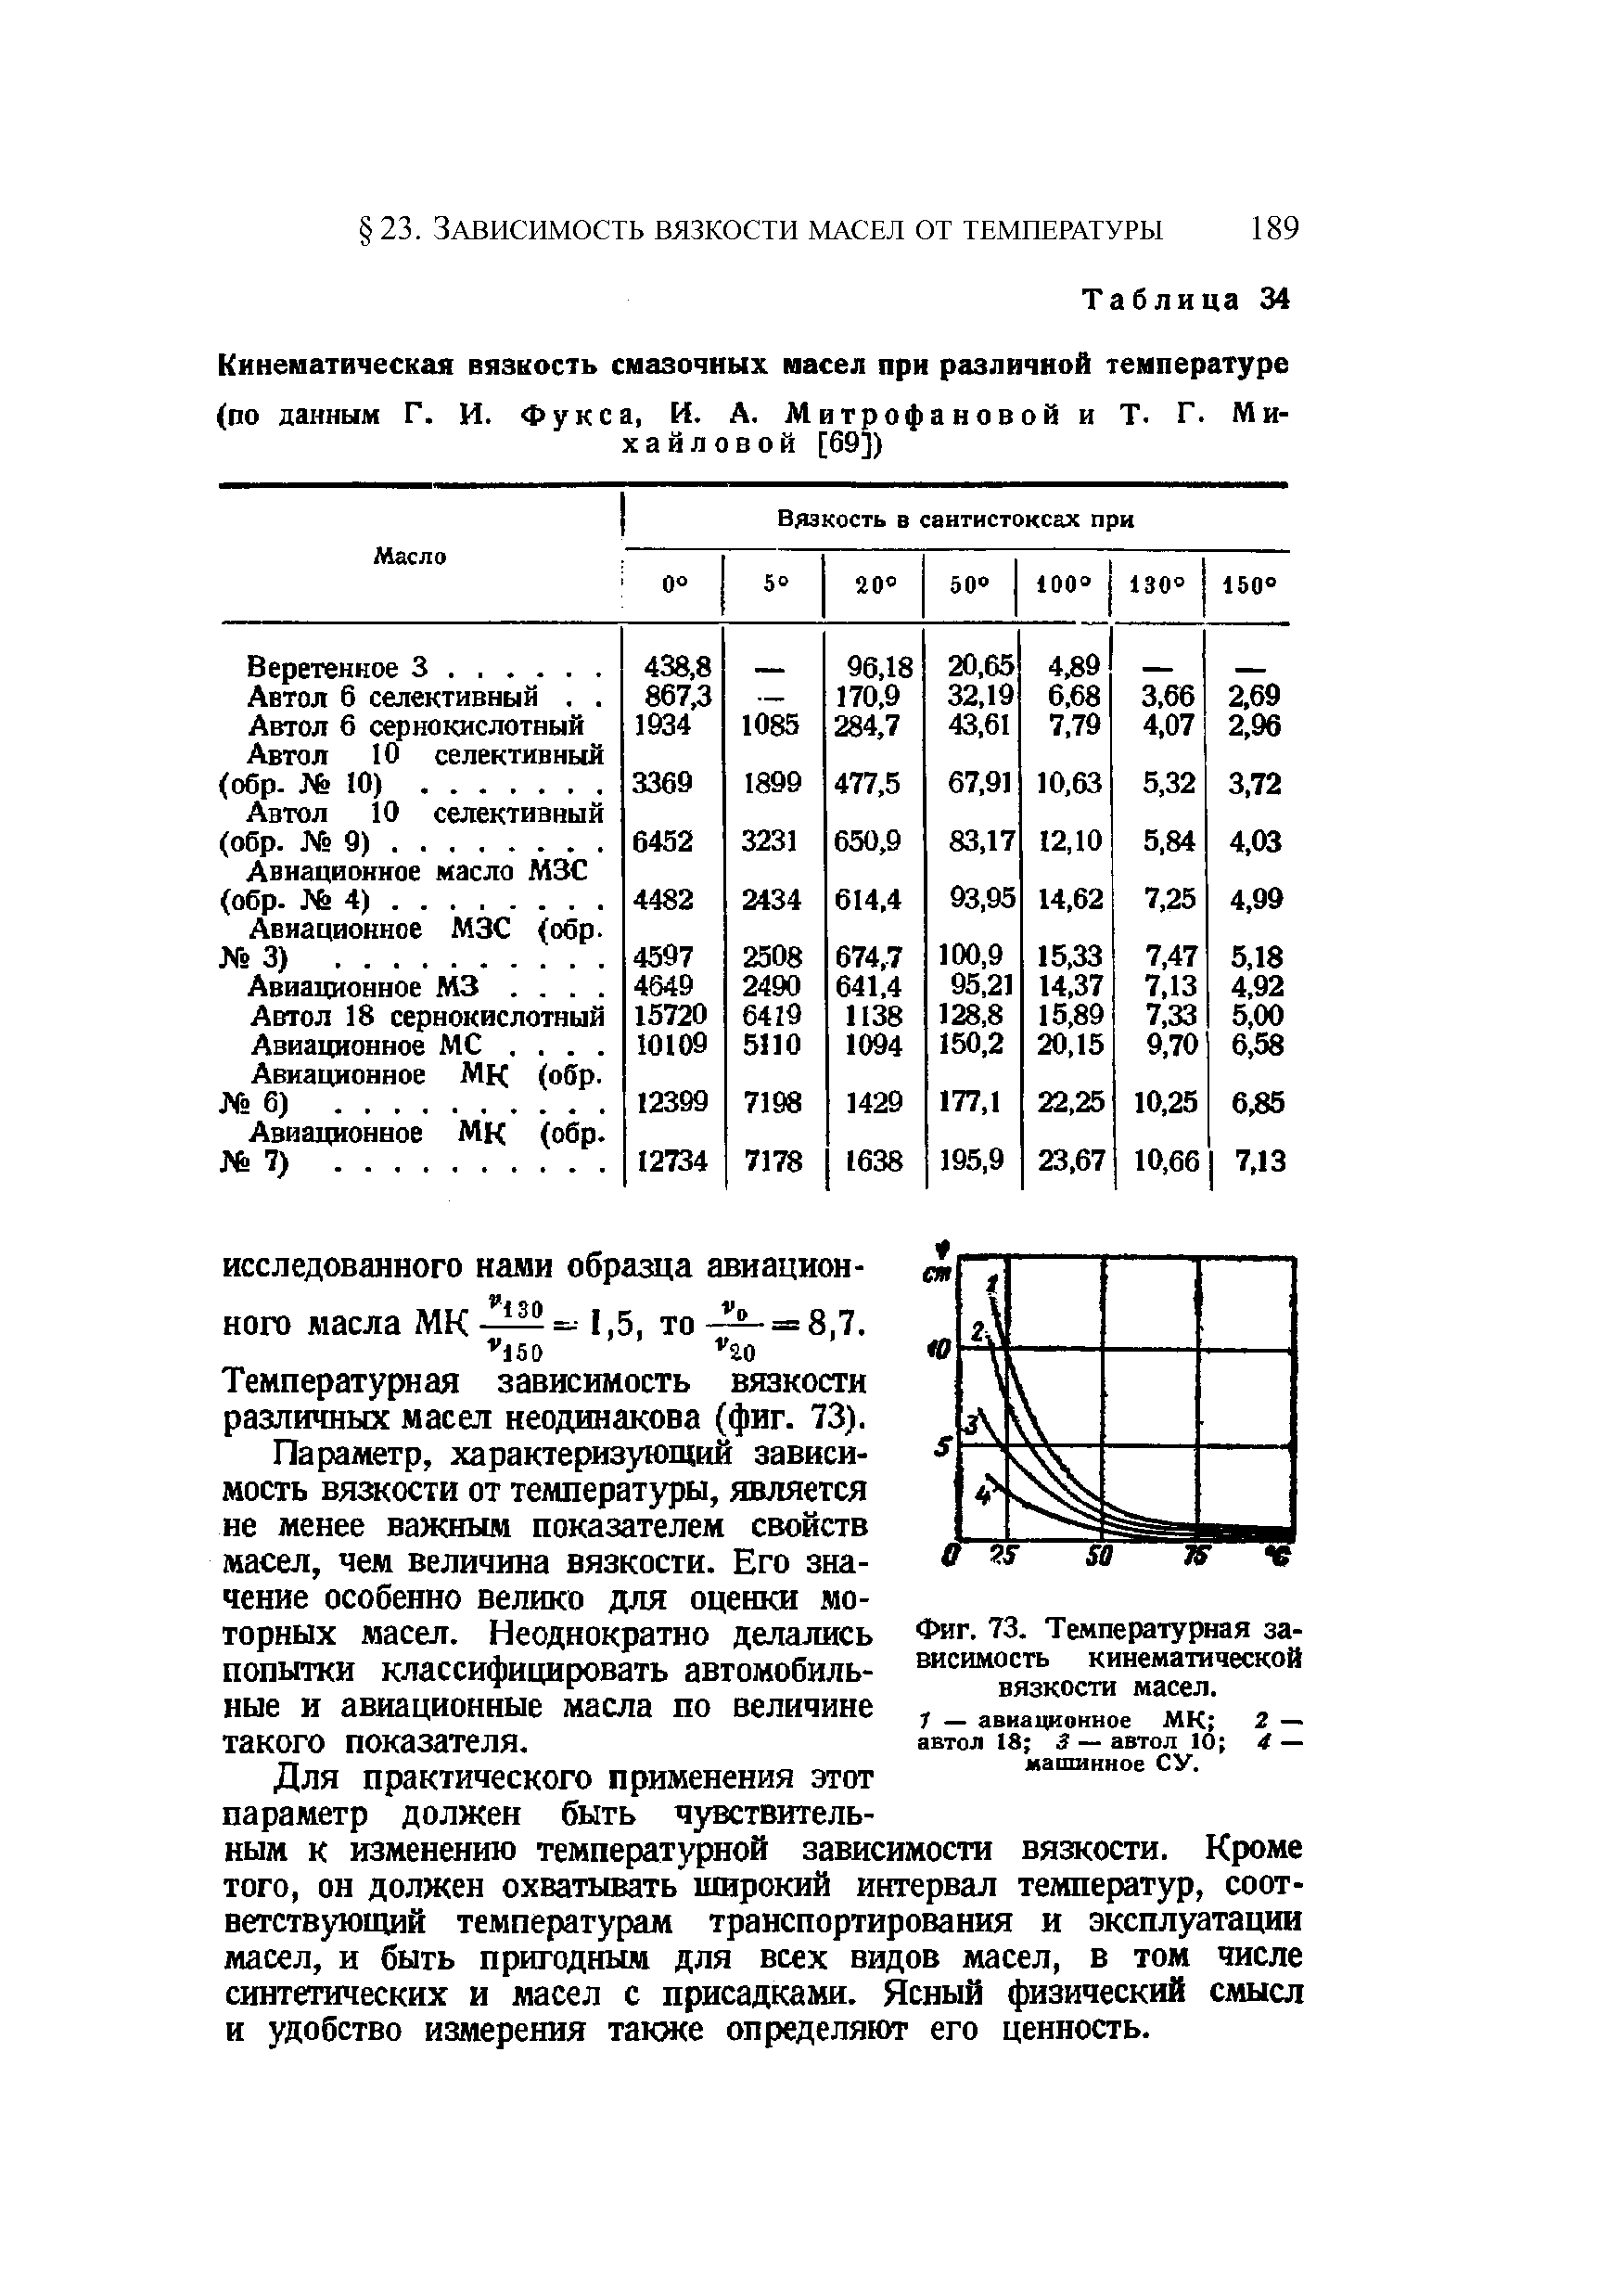 Температурная зависимость вязкости различных масел неодинакова (фиг. 73).